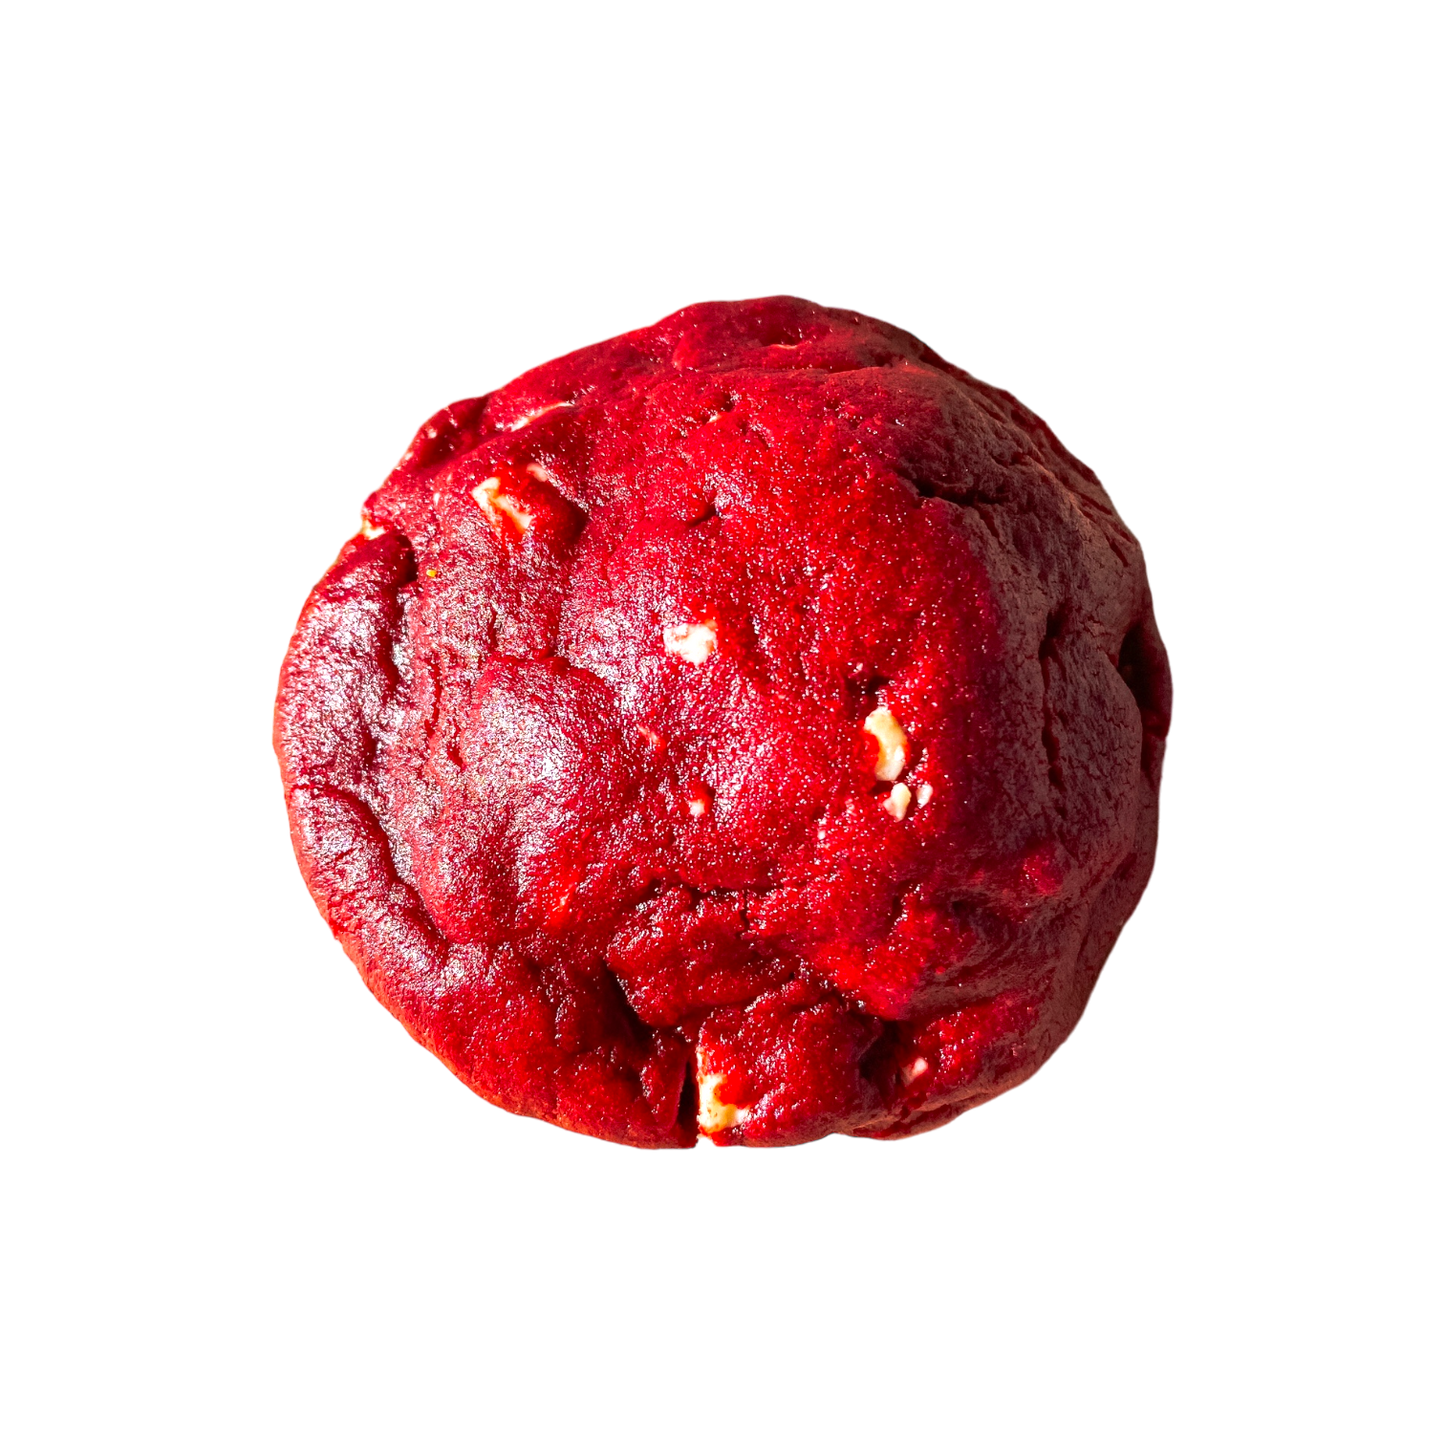 Cookie - Red velvet